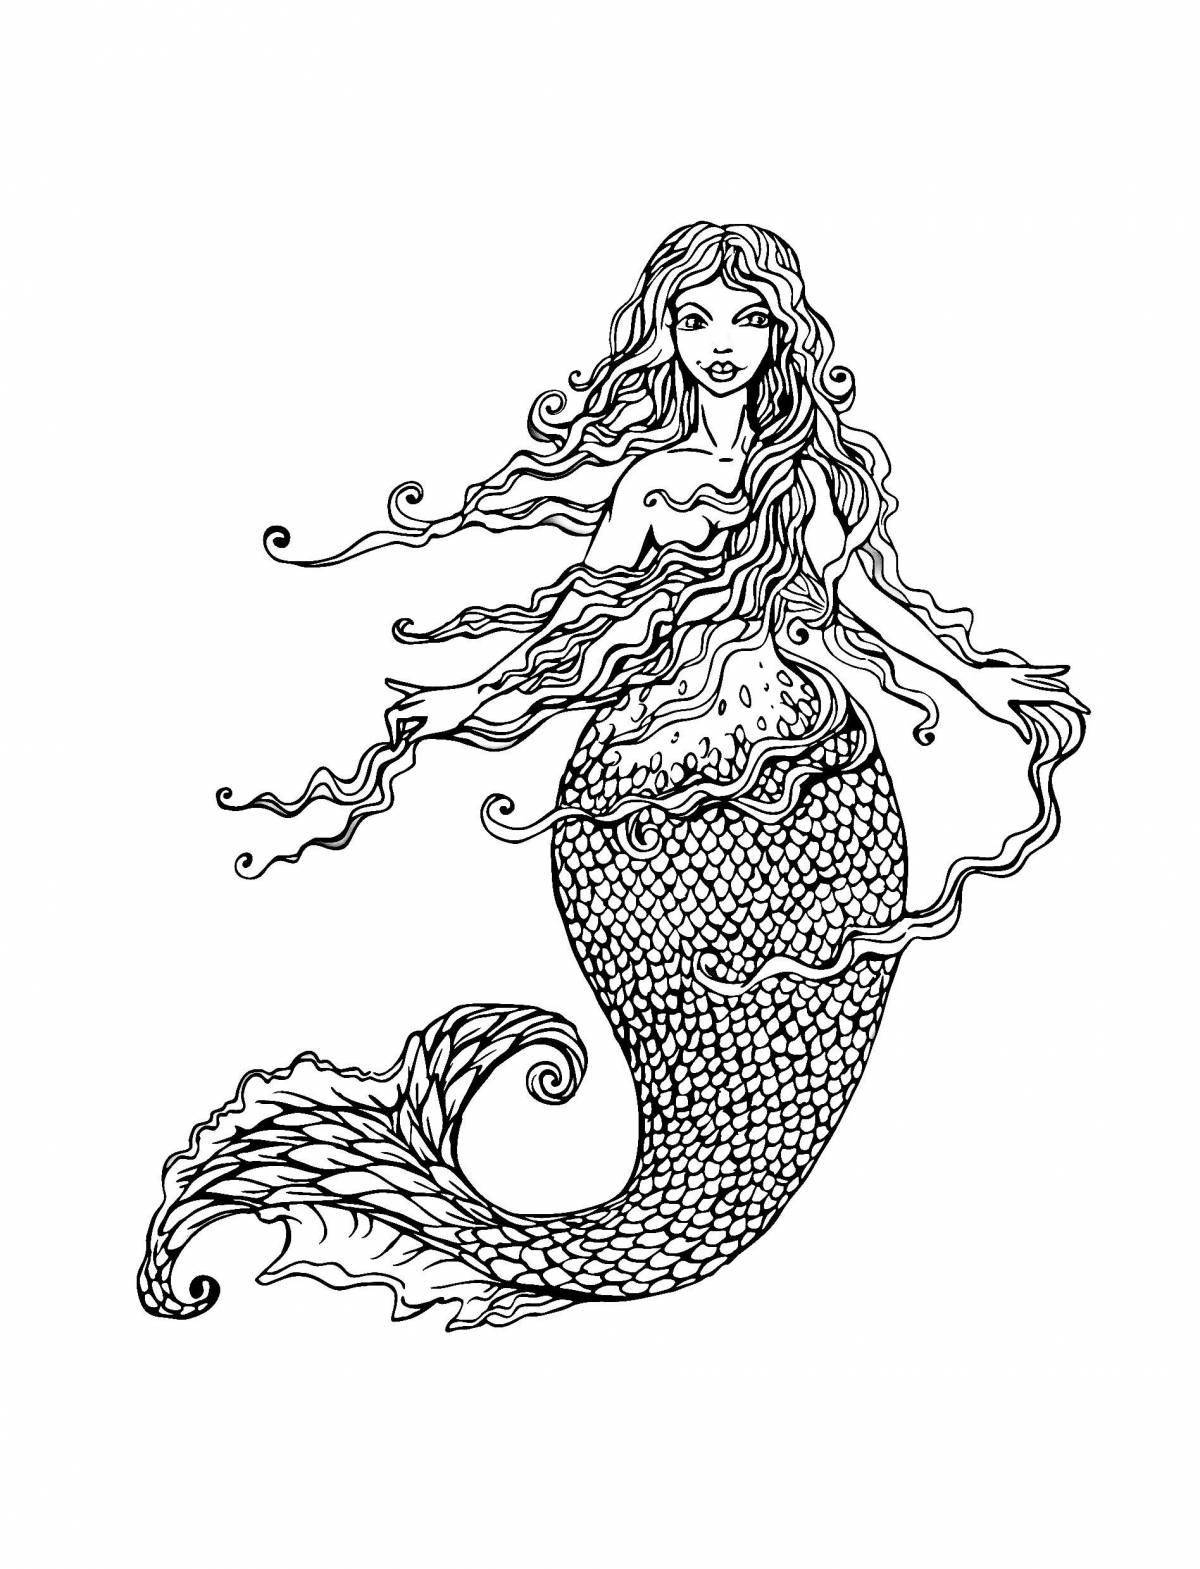 Joyful coloring antistress mermaid